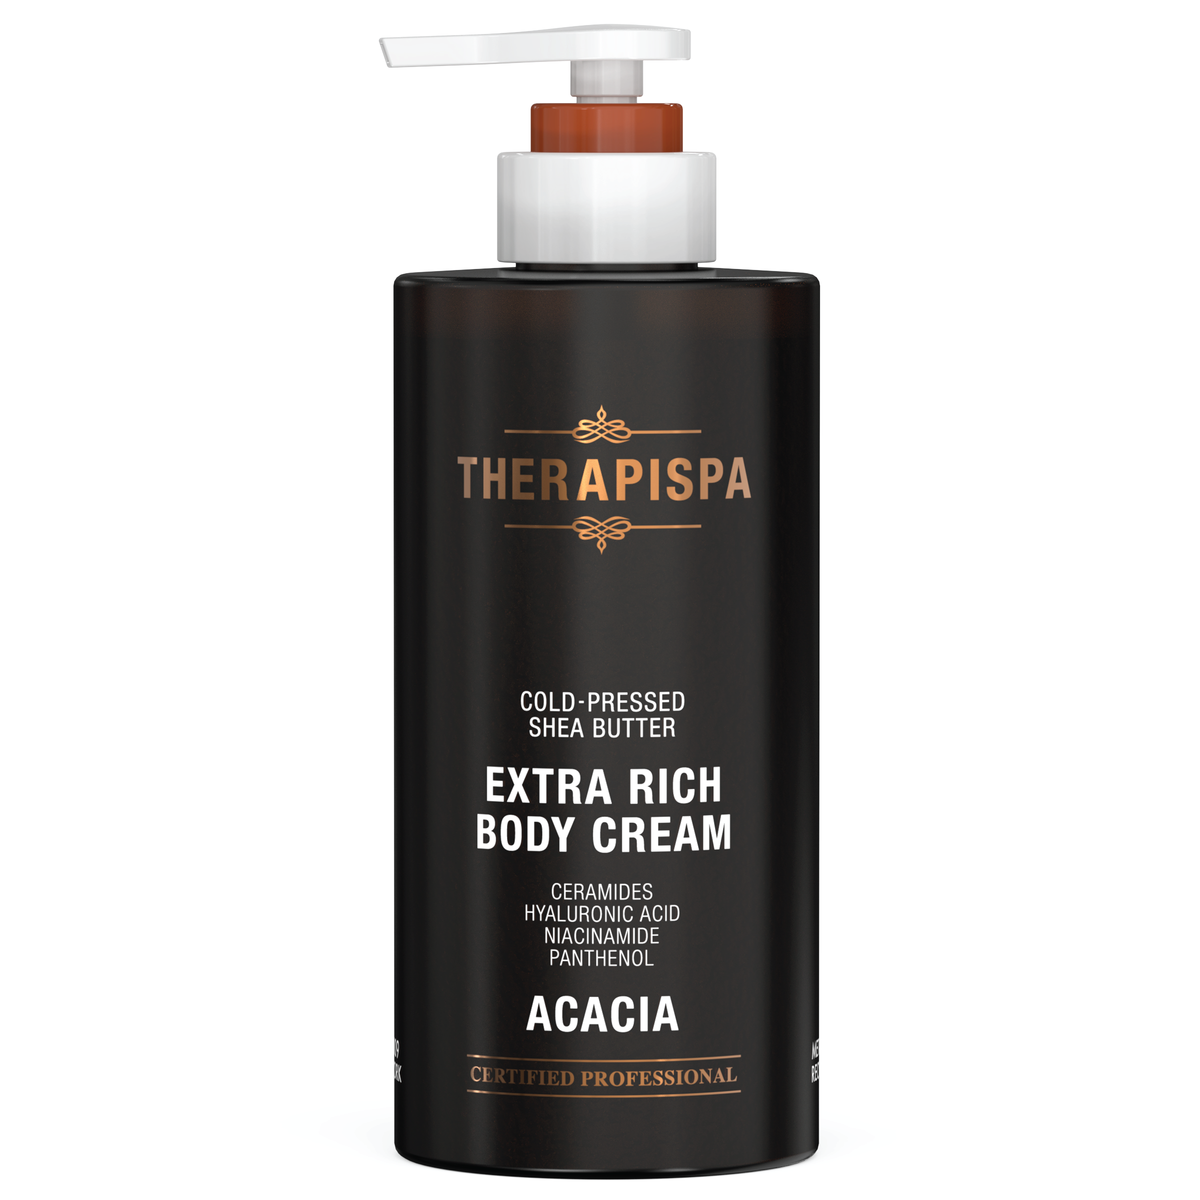 Extra Rich Body Cream / Acacia